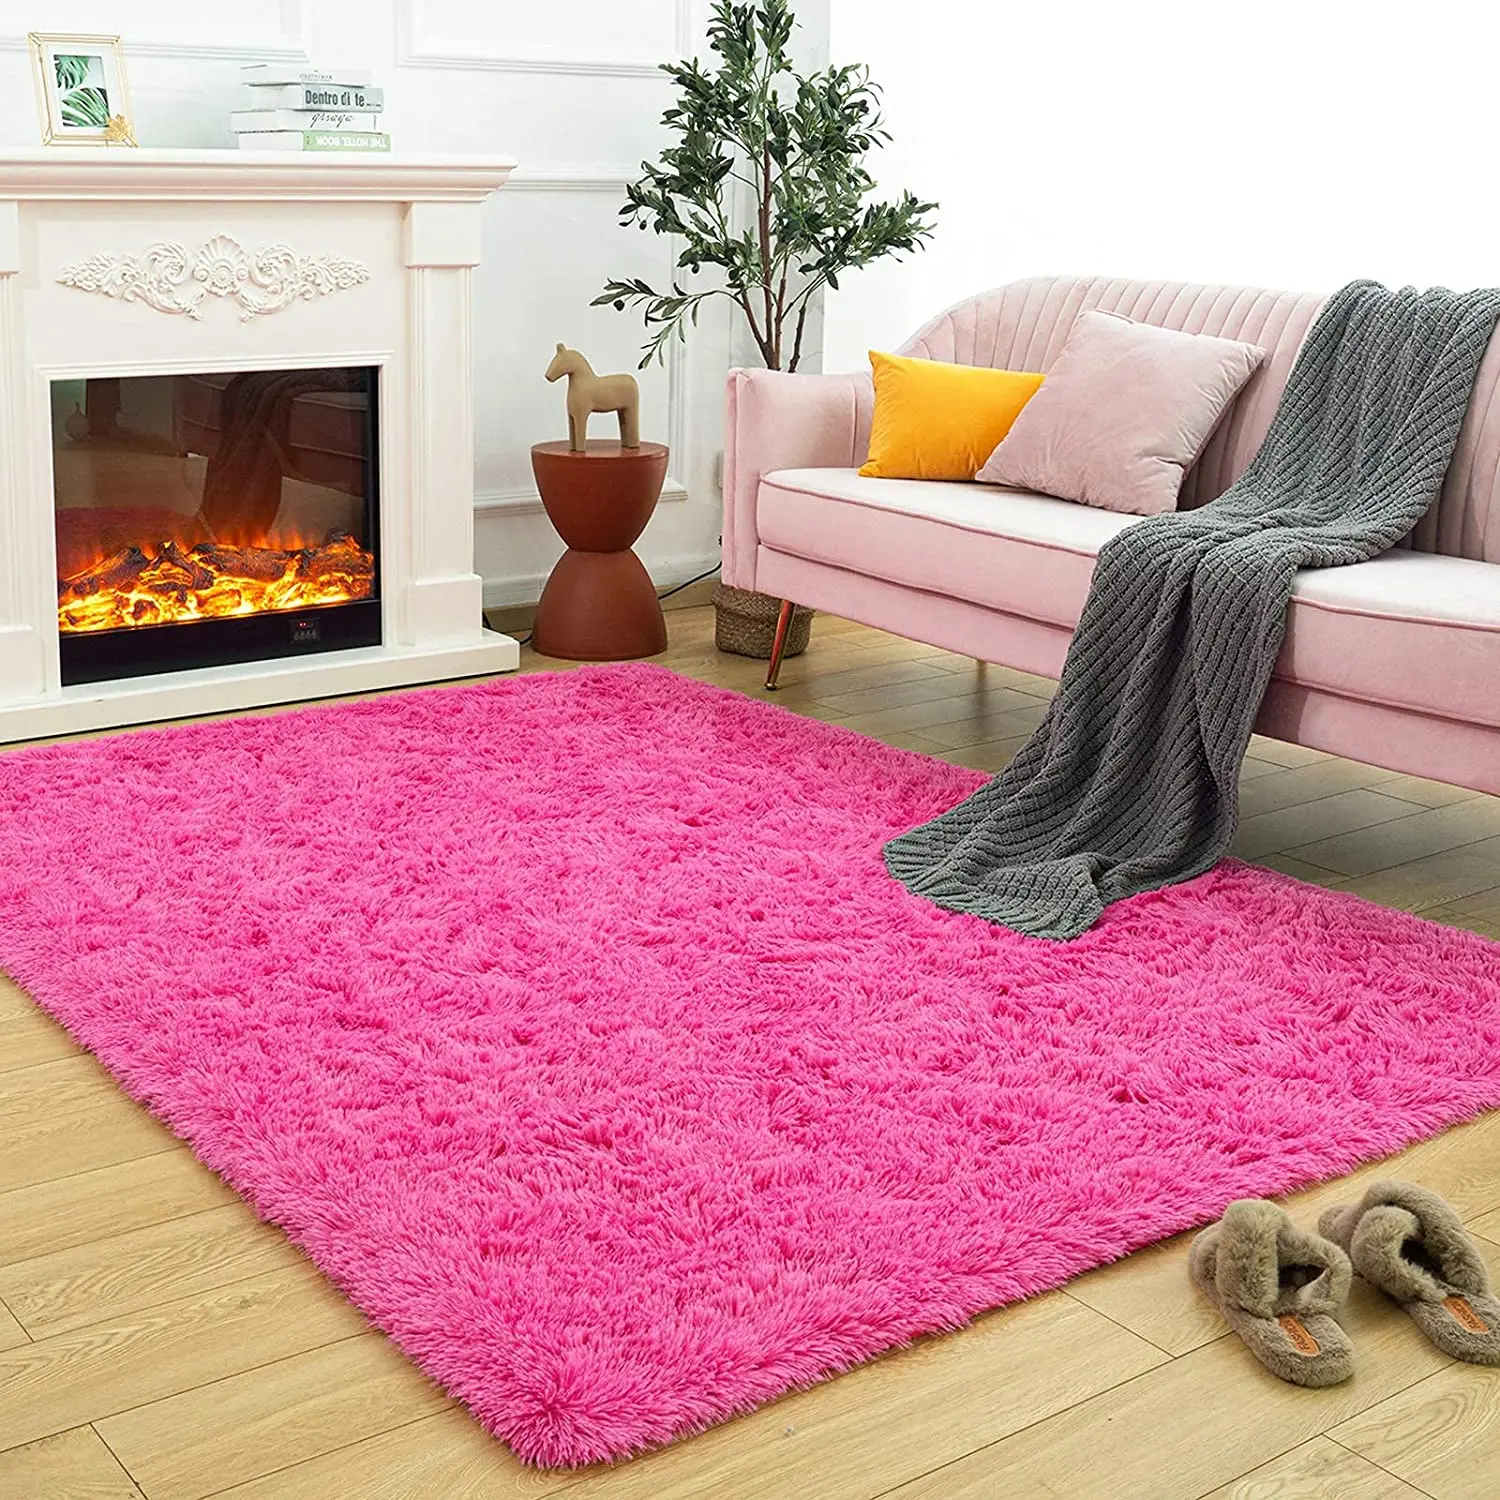 

Пушистый Ковер для спальни, ярко-розовый коврик для гостиной, пушистый плюшевый ковер для спальни, пушистый ковер для помещений, современный мягкий домашний декор